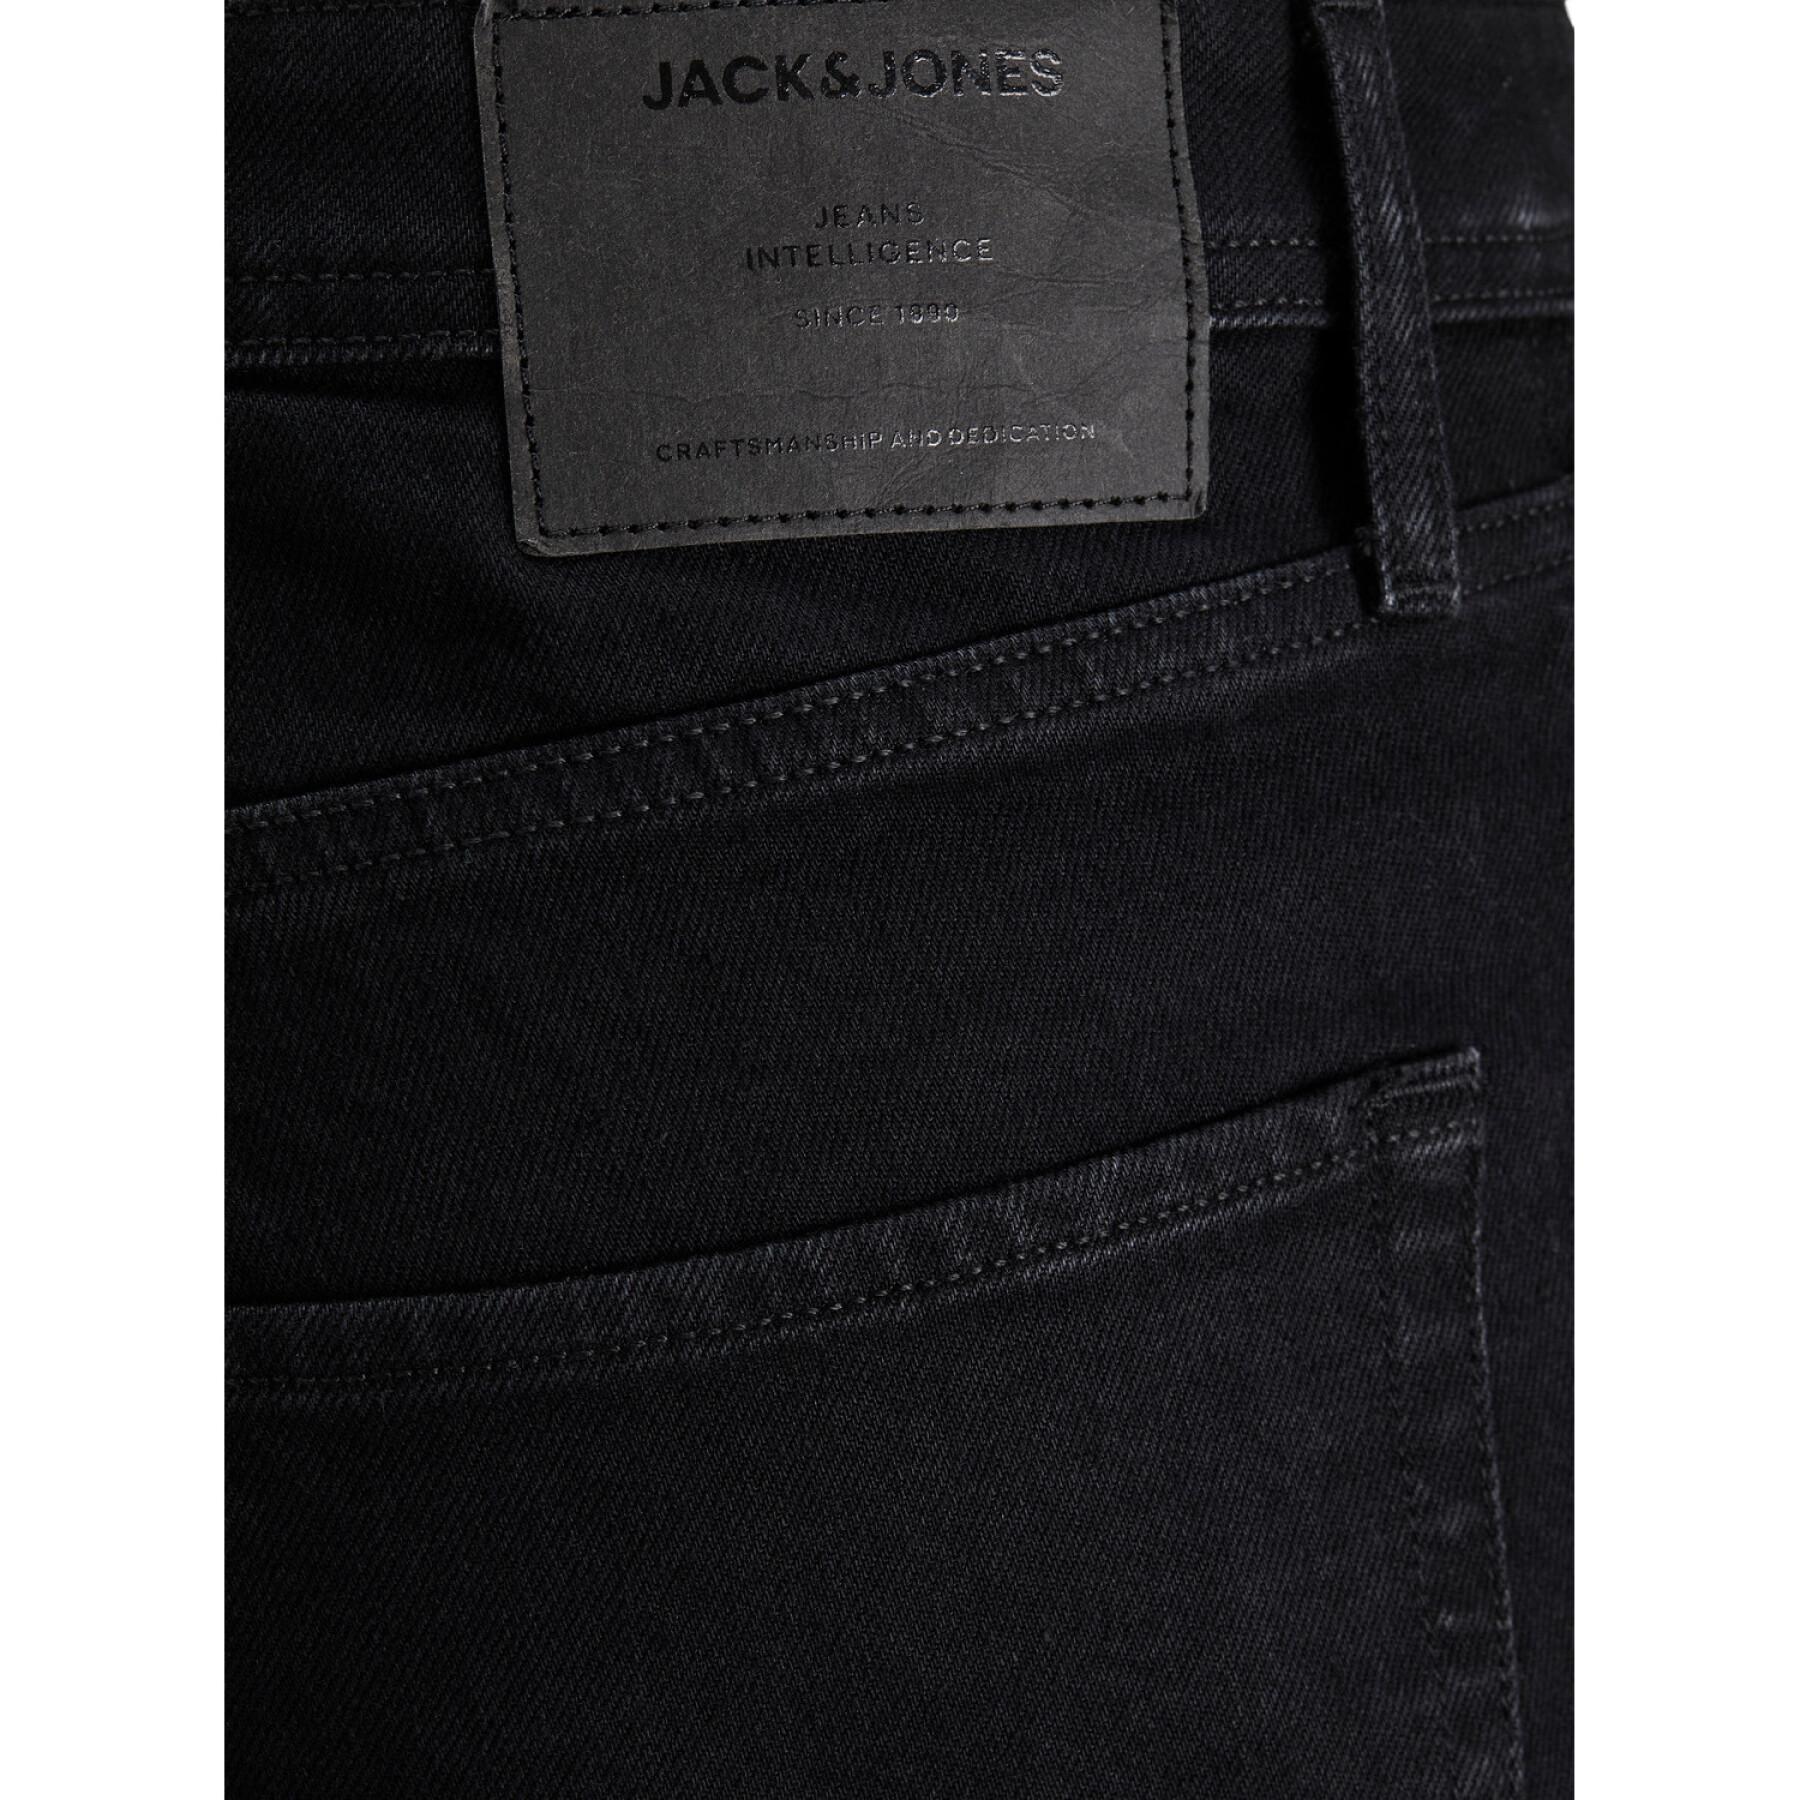 Pantalones vaqueros Jack & Jones Clark Jiginal Cj 729 Noos